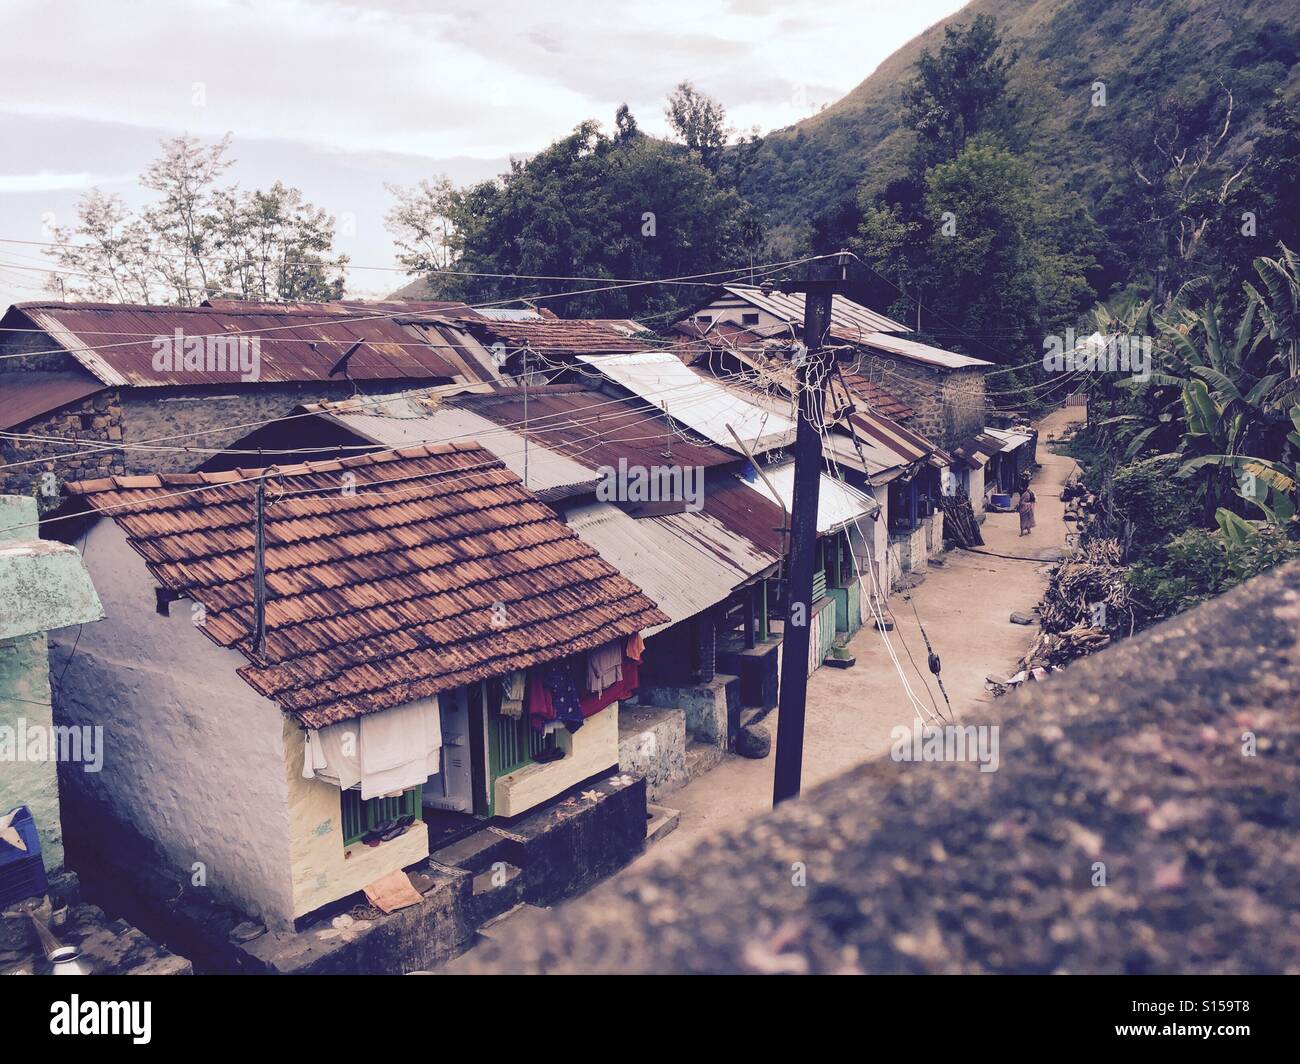 Villaggio estranea all'interno delle montagne dell'himalaya Foto Stock